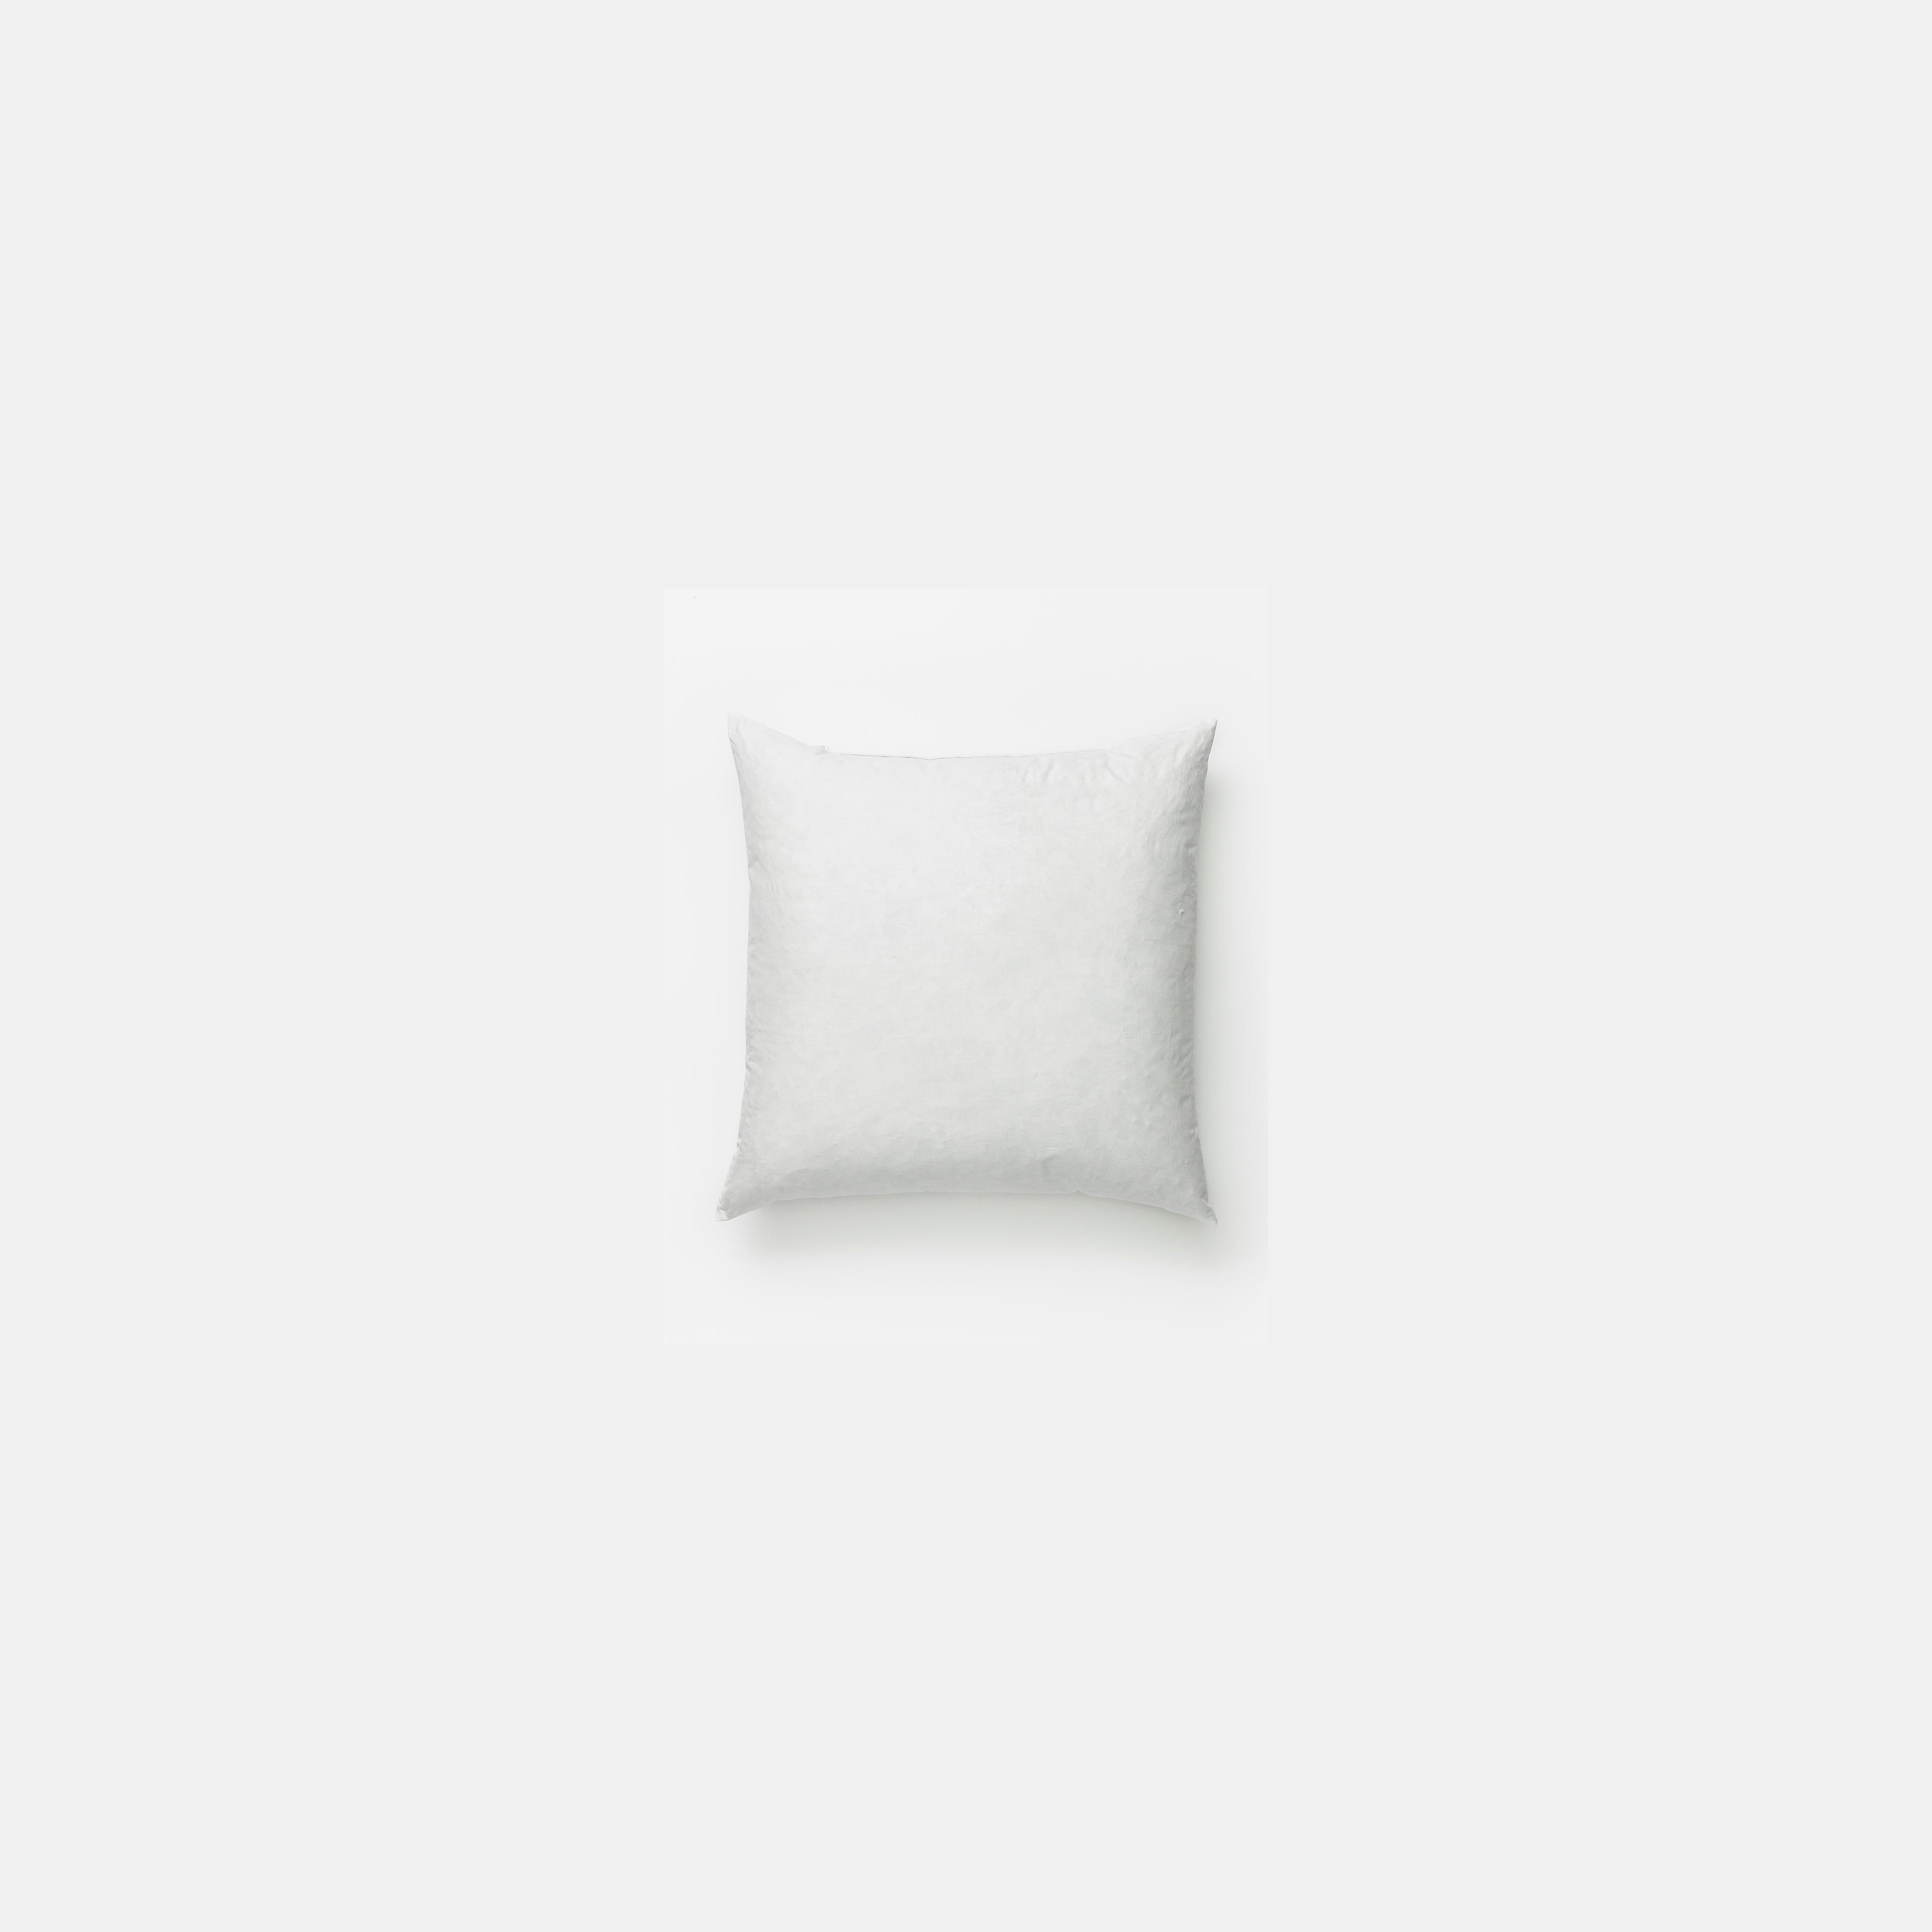 Premium Pillow Insert